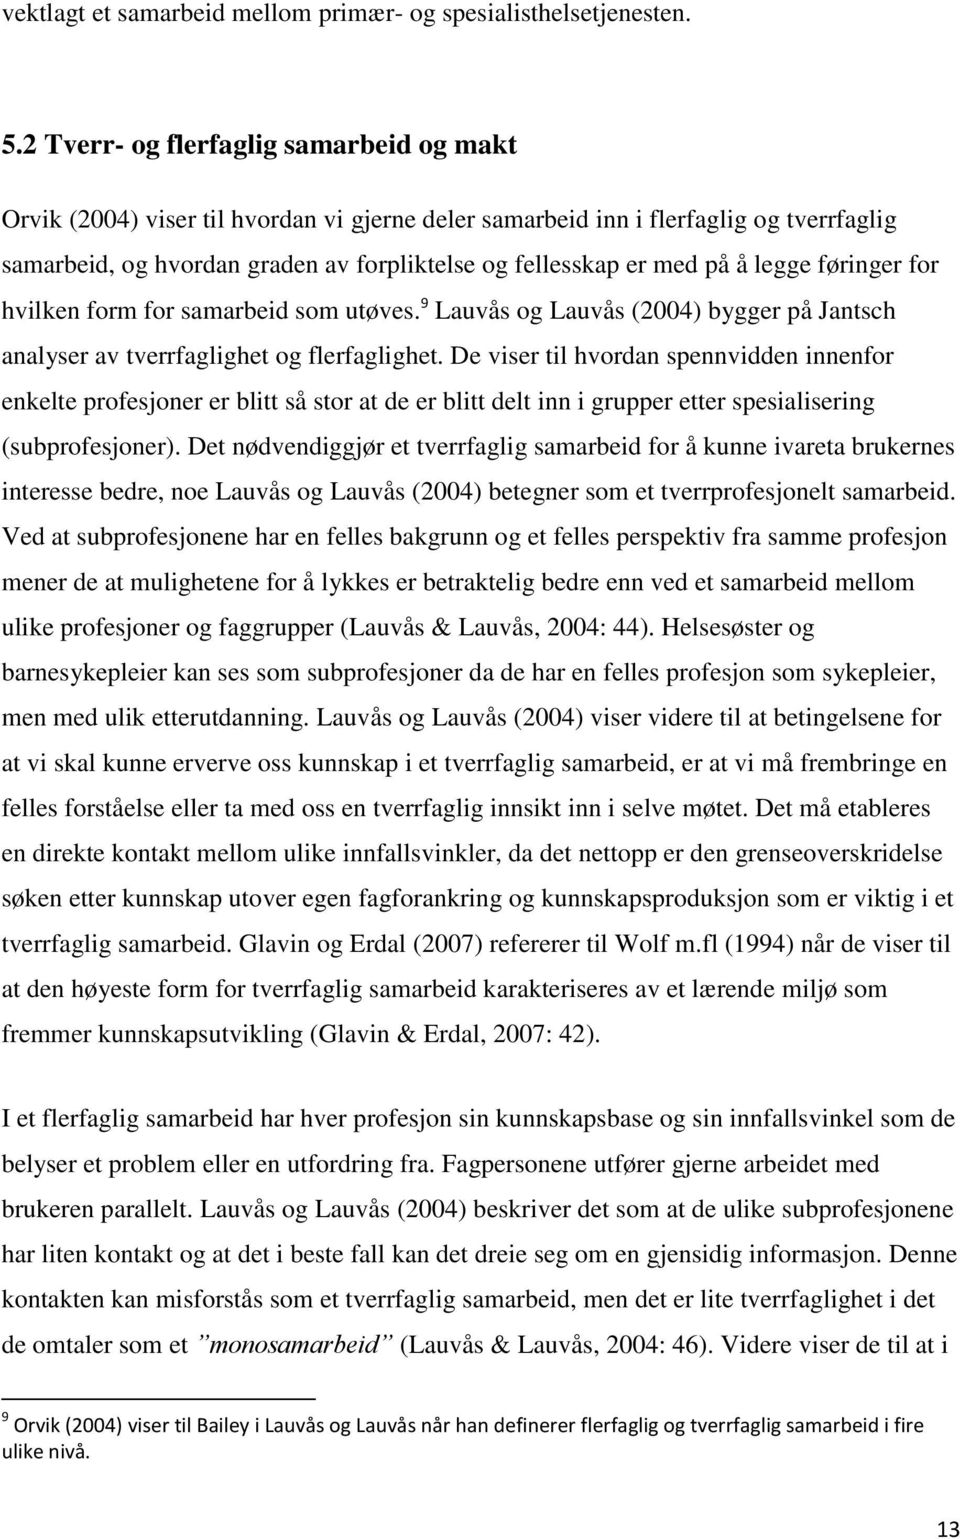 å legge føringer for hvilken form for samarbeid som utøves. 9 Lauvås og Lauvås (2004) bygger på Jantsch analyser av tverrfaglighet og flerfaglighet.